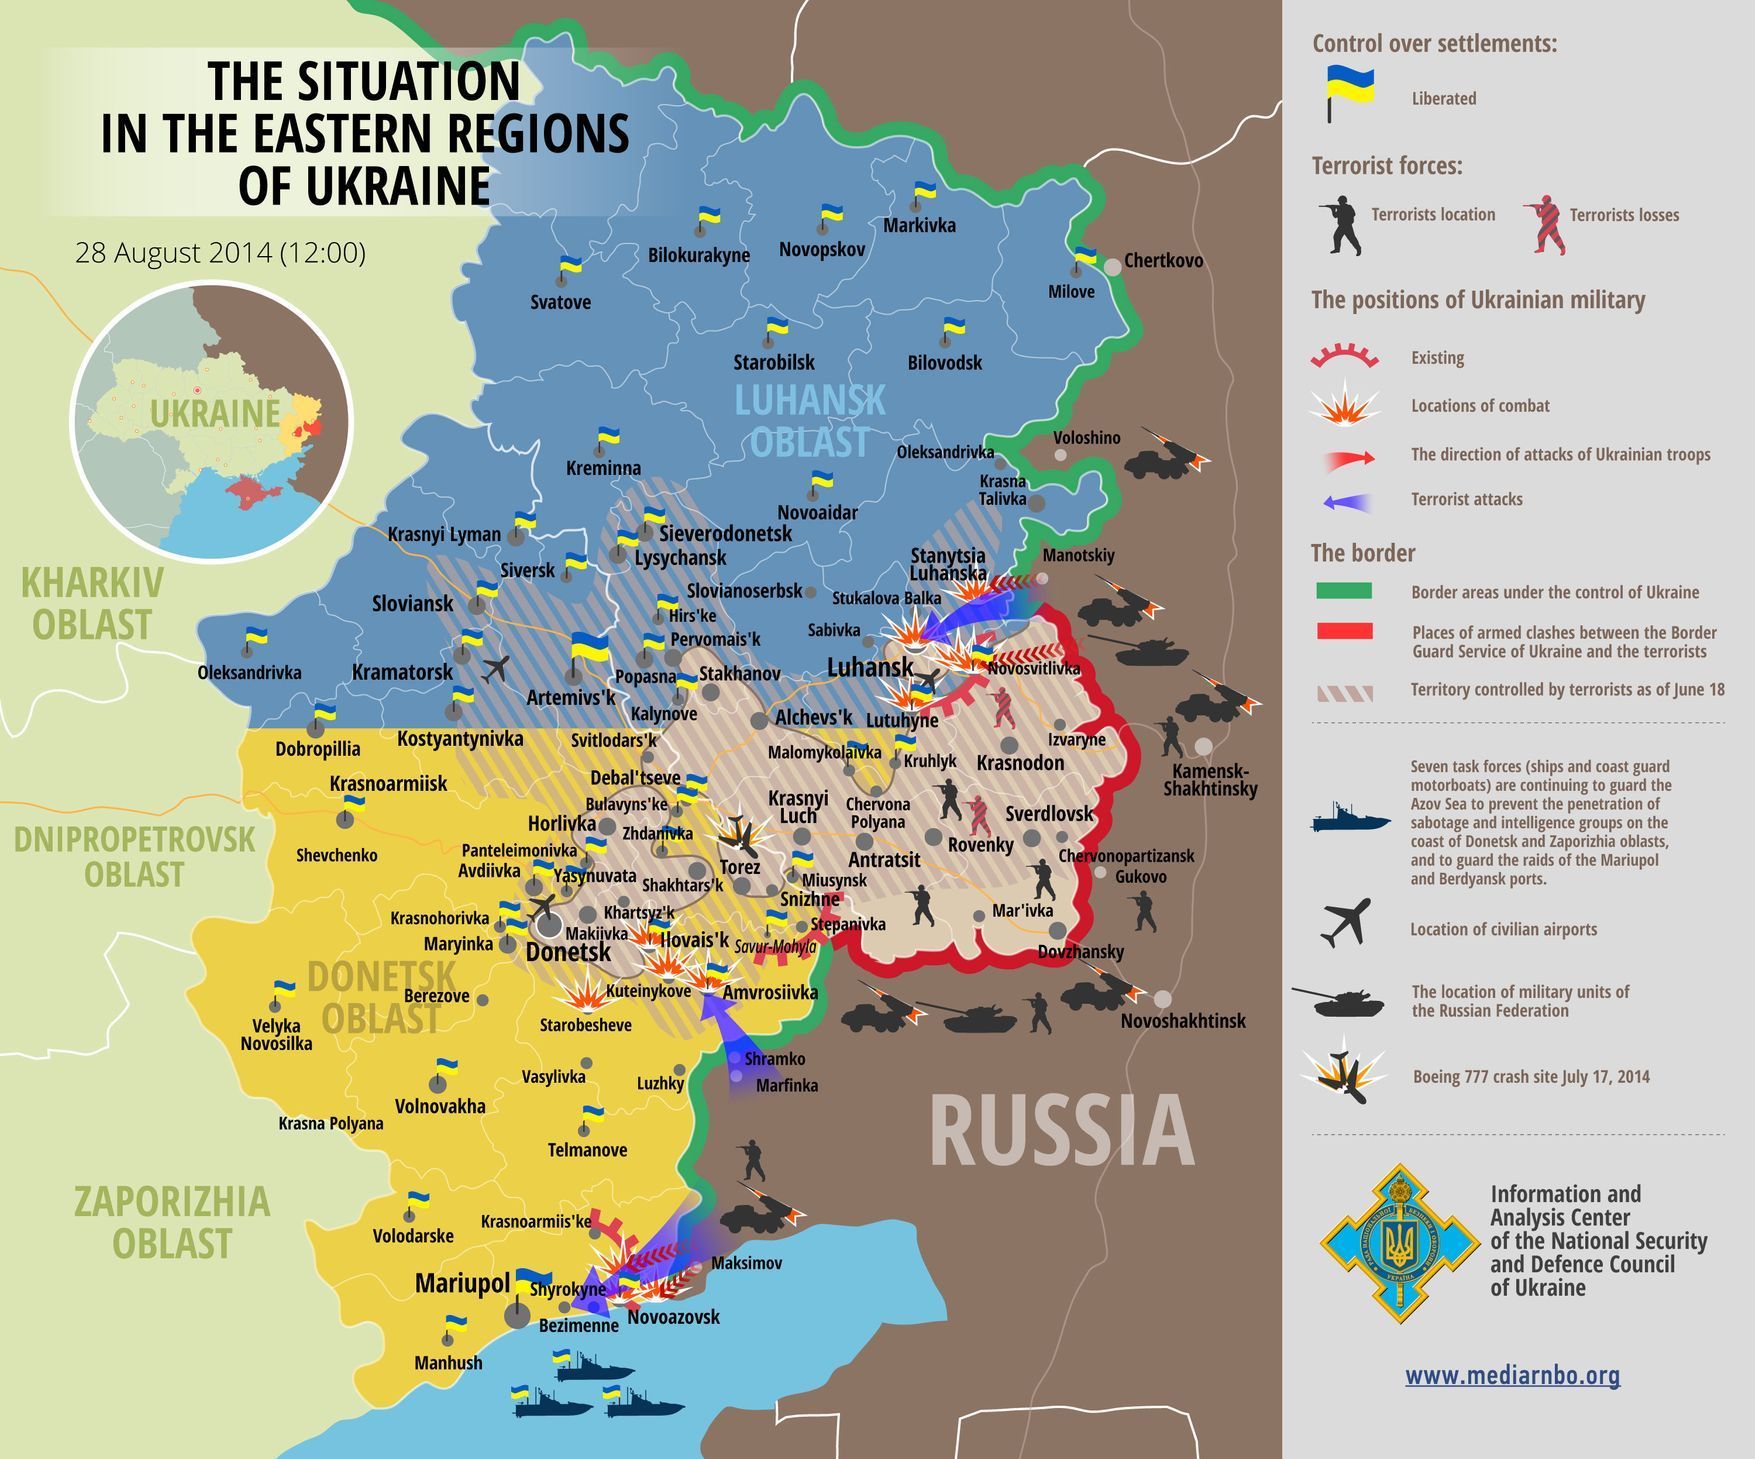 Ukrajina - mapa bojů aktualizovaná k 28. srpnu 2014 ukrajinskou Národní bezpečnostní radou